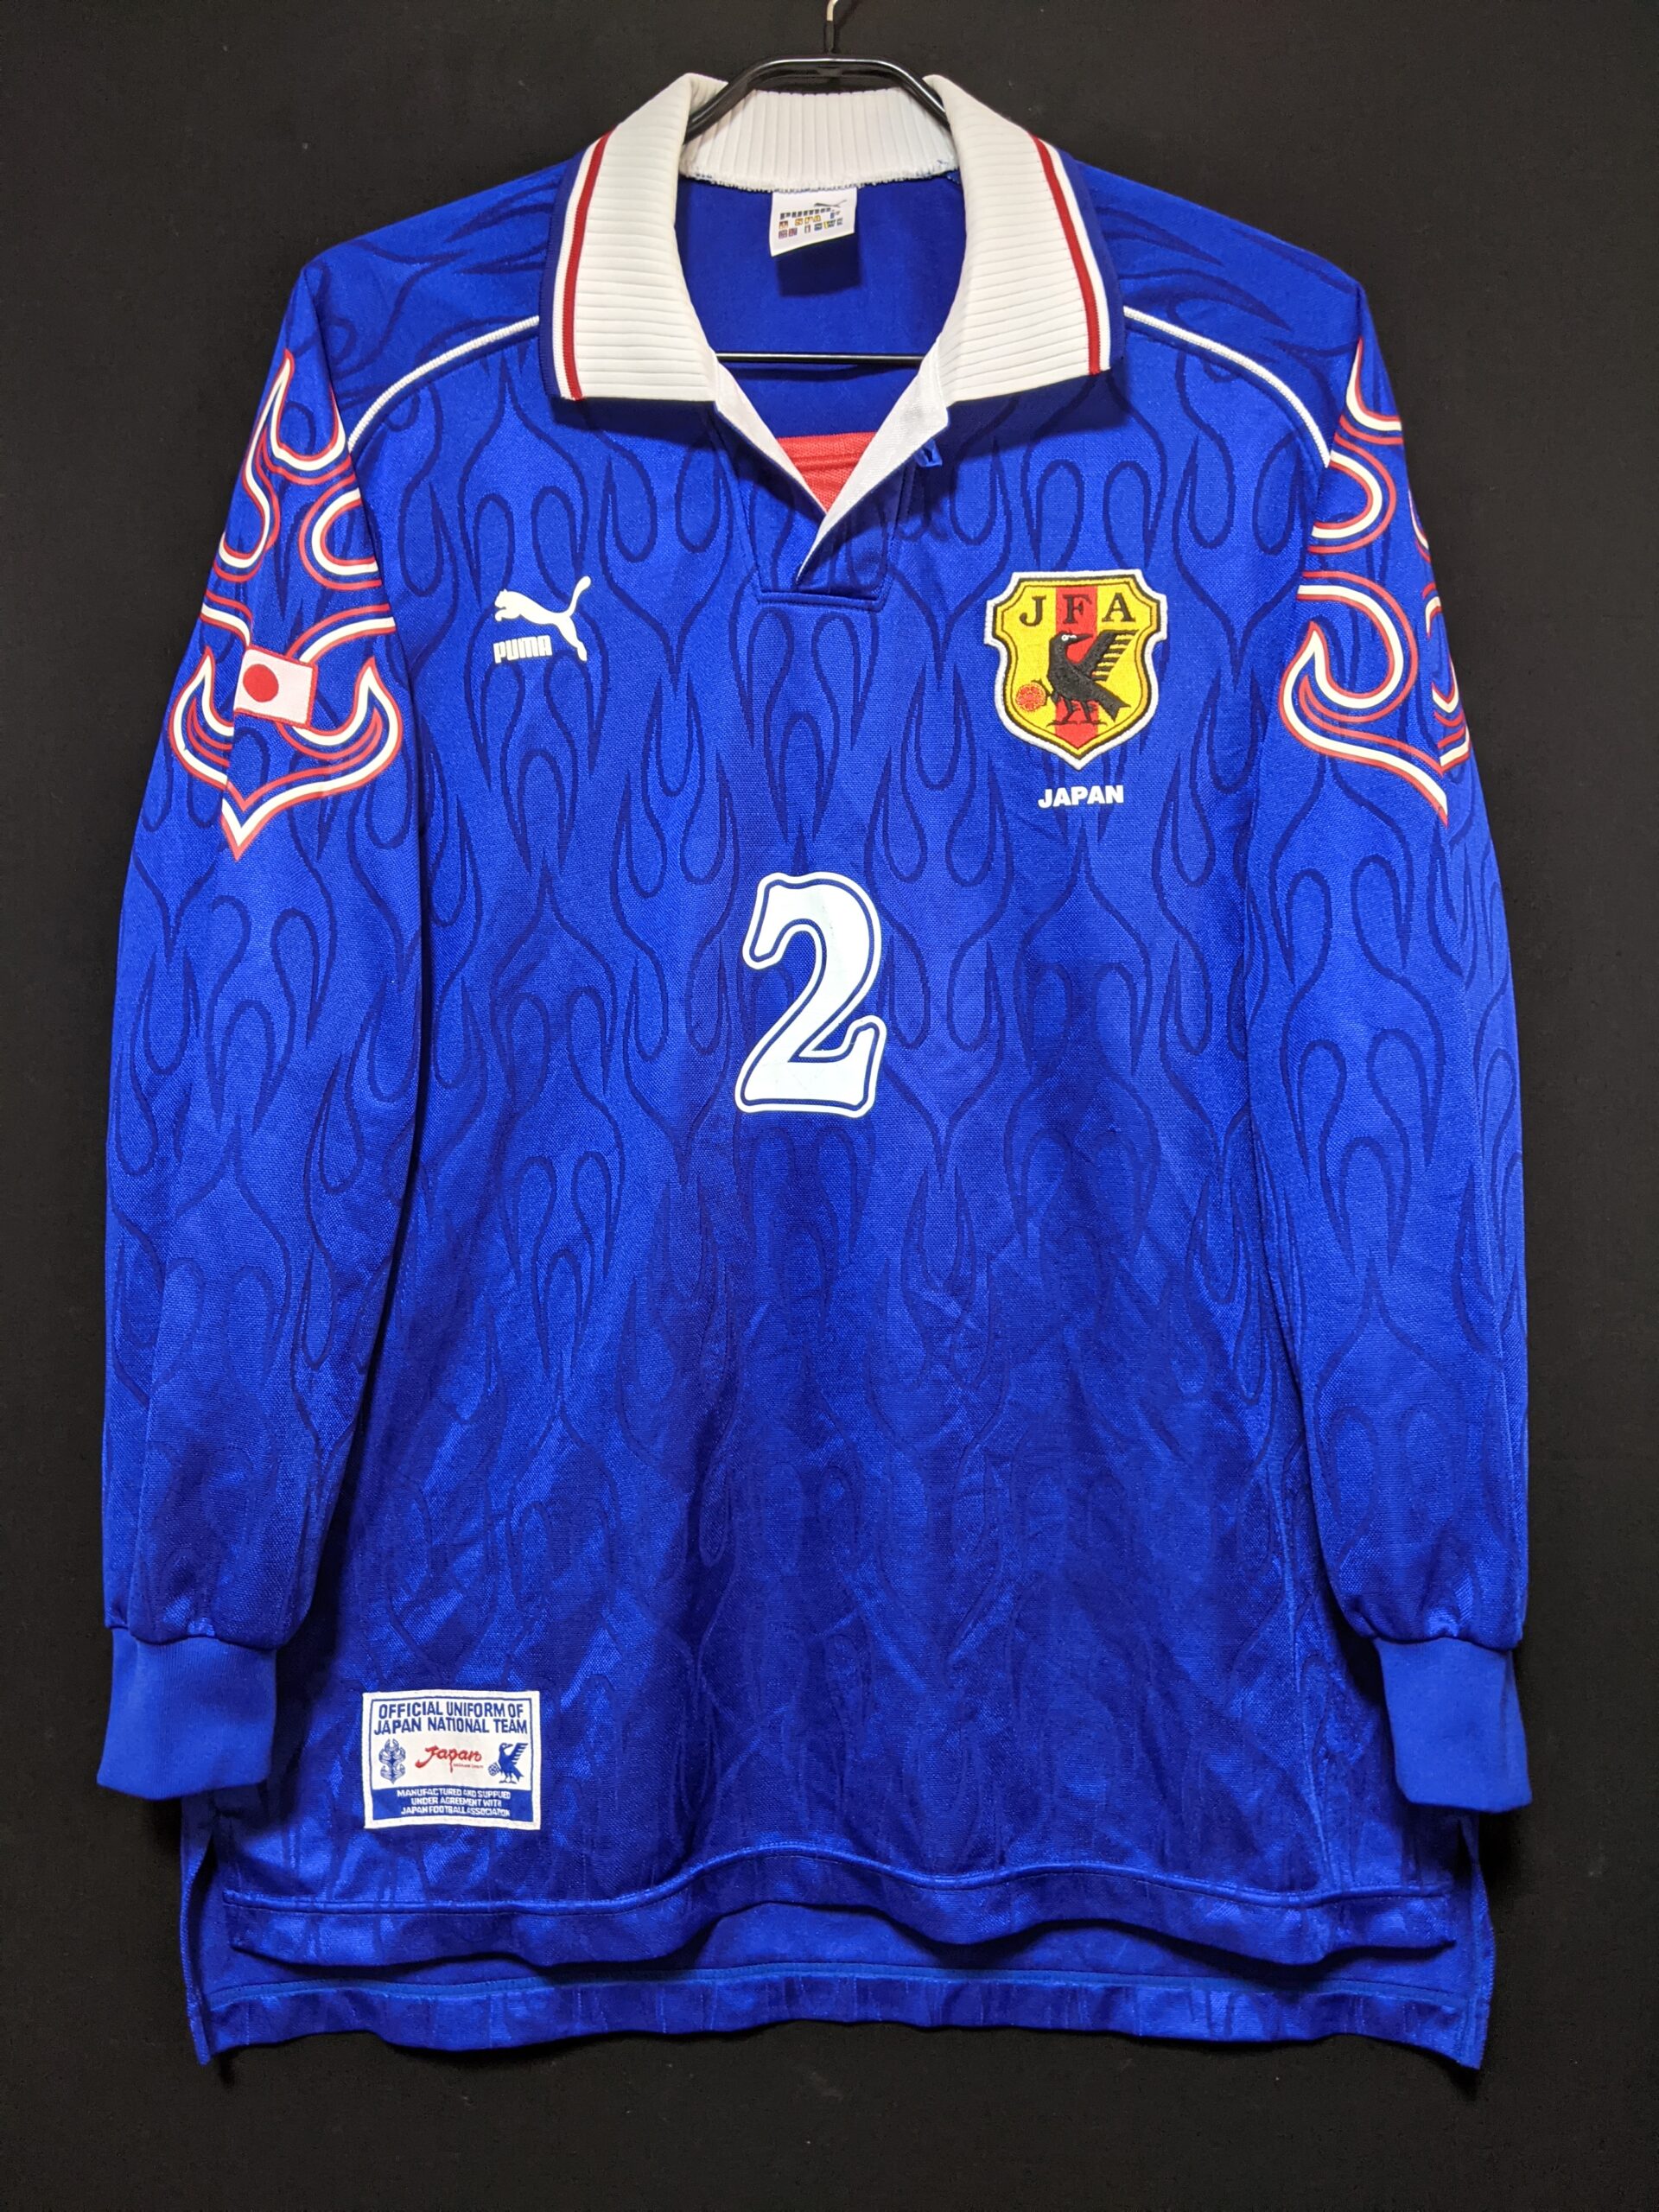 一般市販のない幻の代表ユニフォーム！1998年U-19日本代表｜サッカー